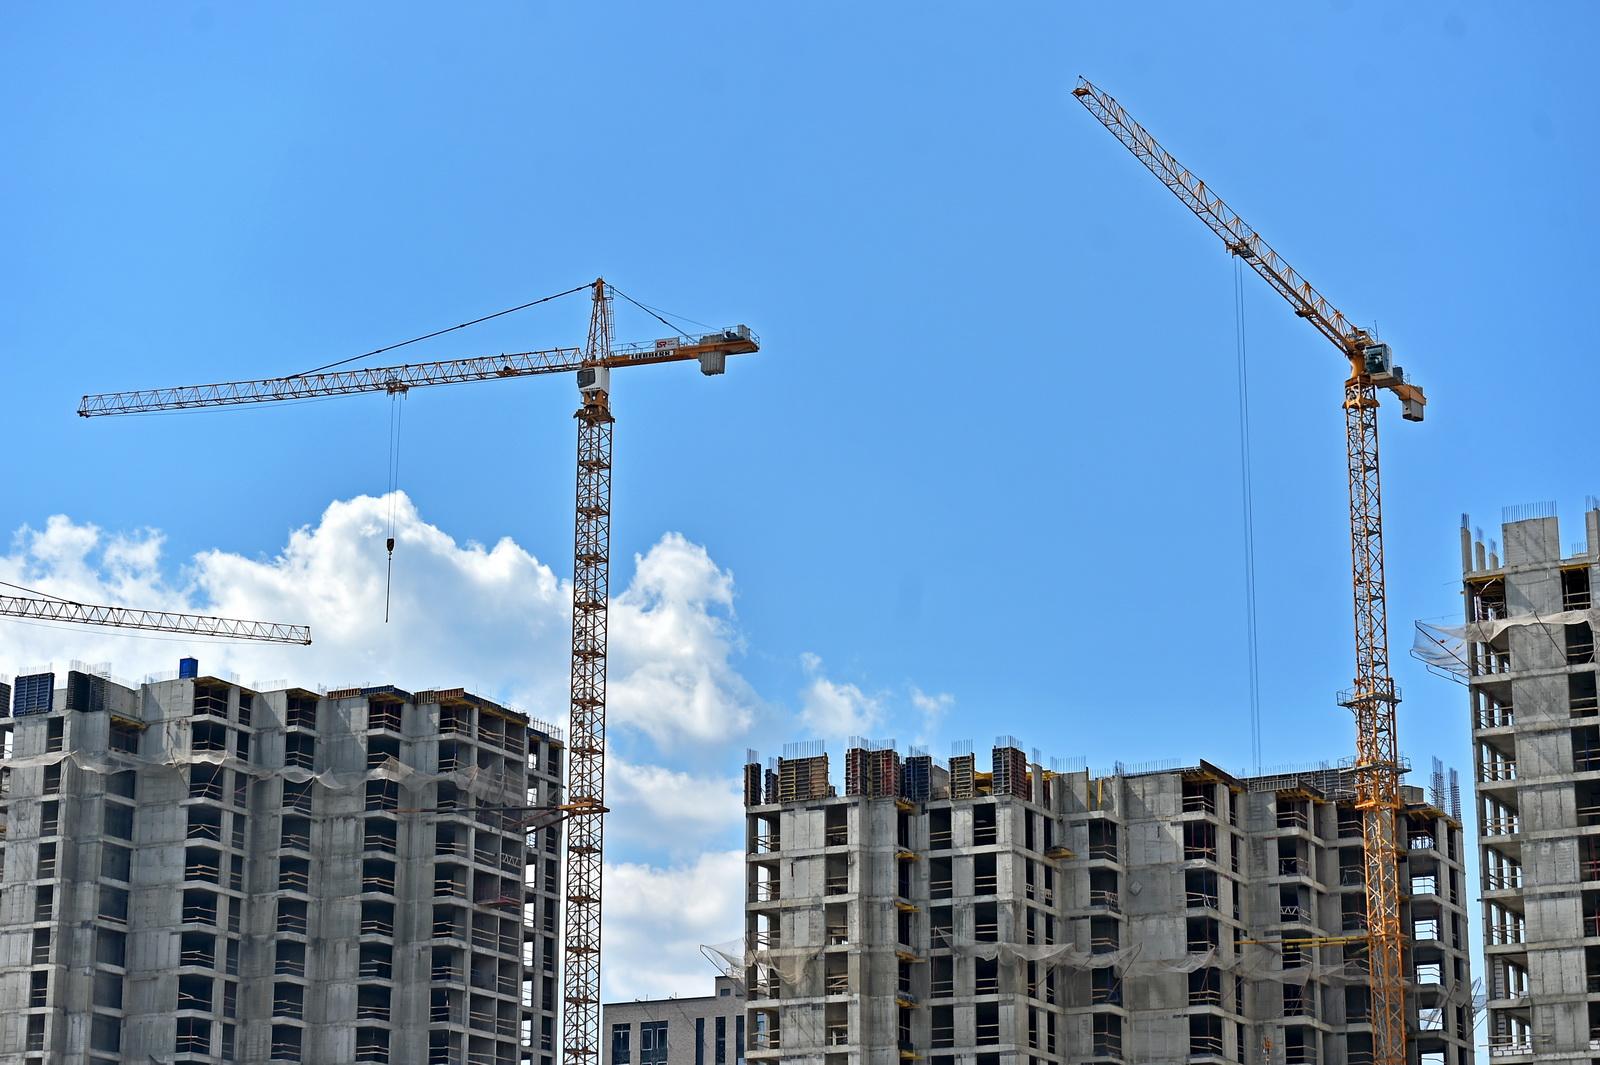 Порядка 4,5 млн кв. метров жилья планируется построить в Москве в 2022 году